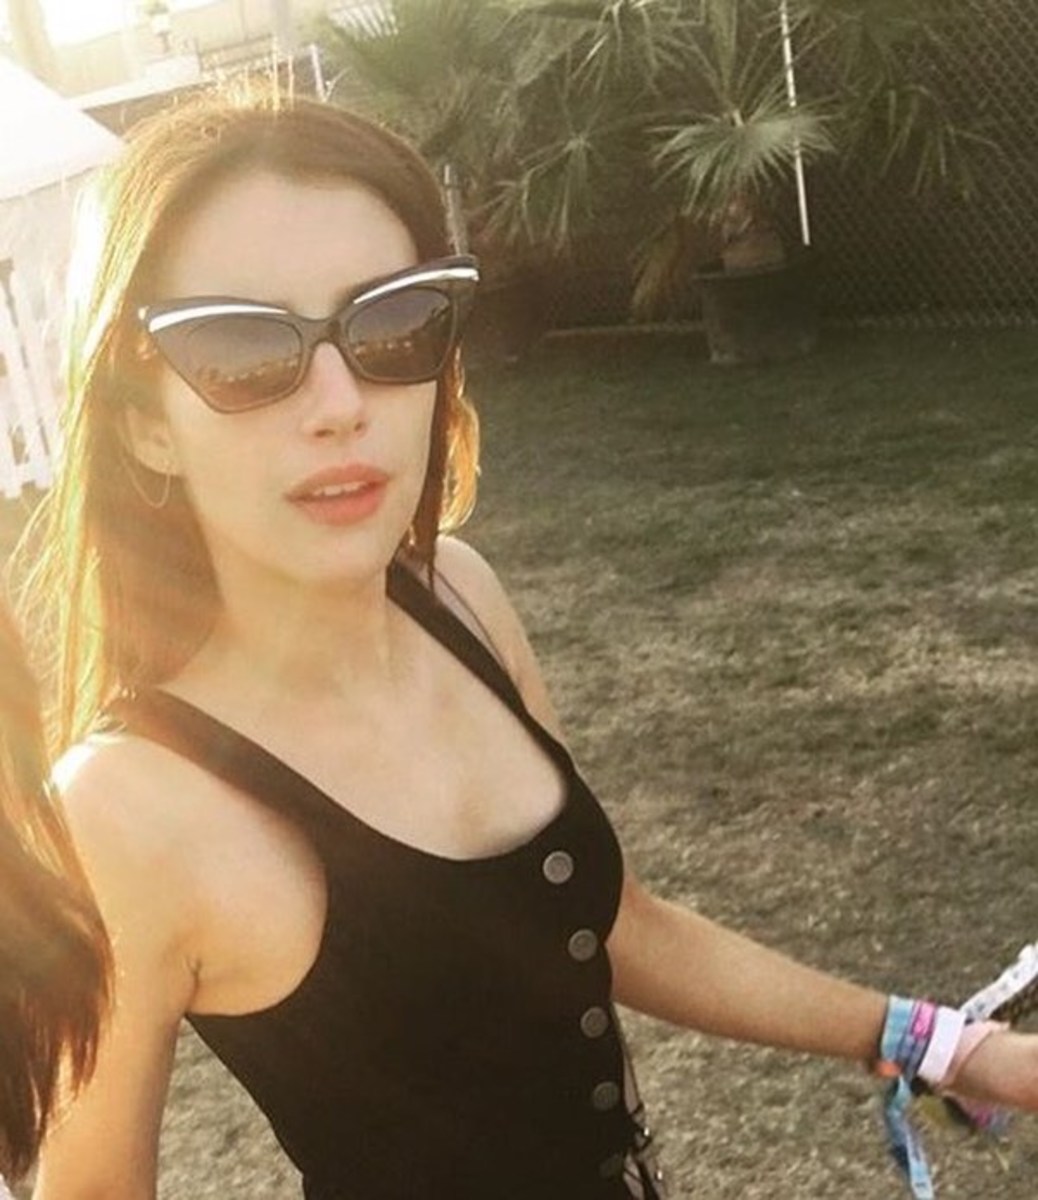 Emma Roberts in Karen Walker sunglasses at Coachella. Photo: @karen_walker/Instagram